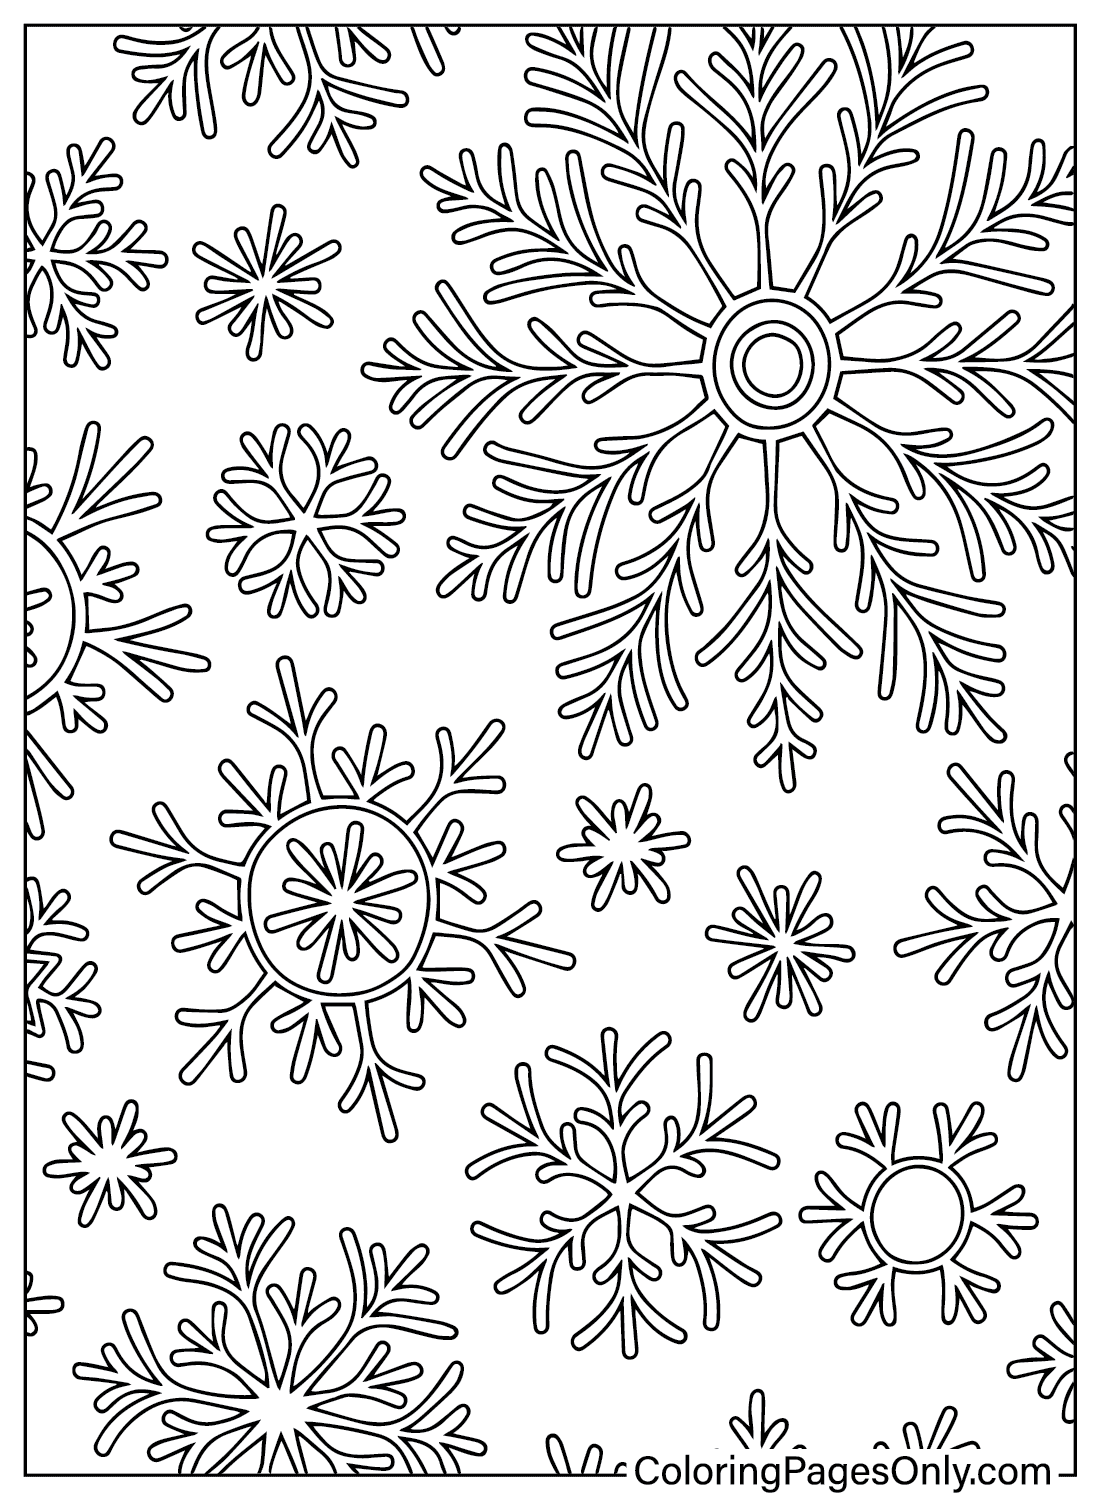 Раскраска Снежинка, которую можно бесплатно распечатать от Snowflake